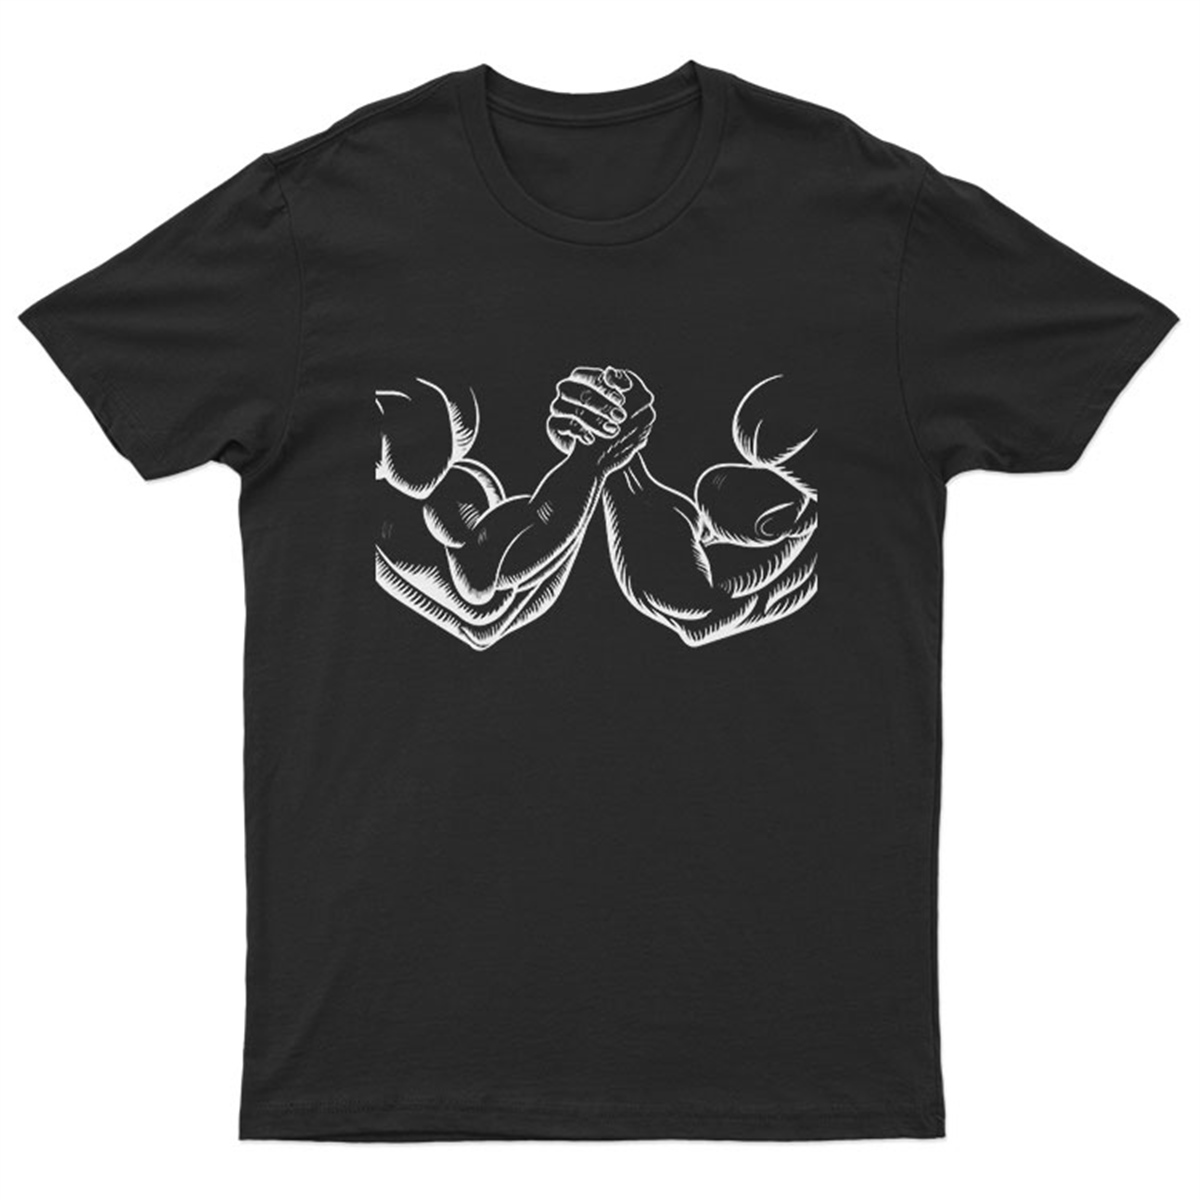 Bilek Güreşi Tişörtleri | Bilek Güreşi Tişört | Bilek Güreşi Tişörtü | Bilek  Güreşi T-Shirt